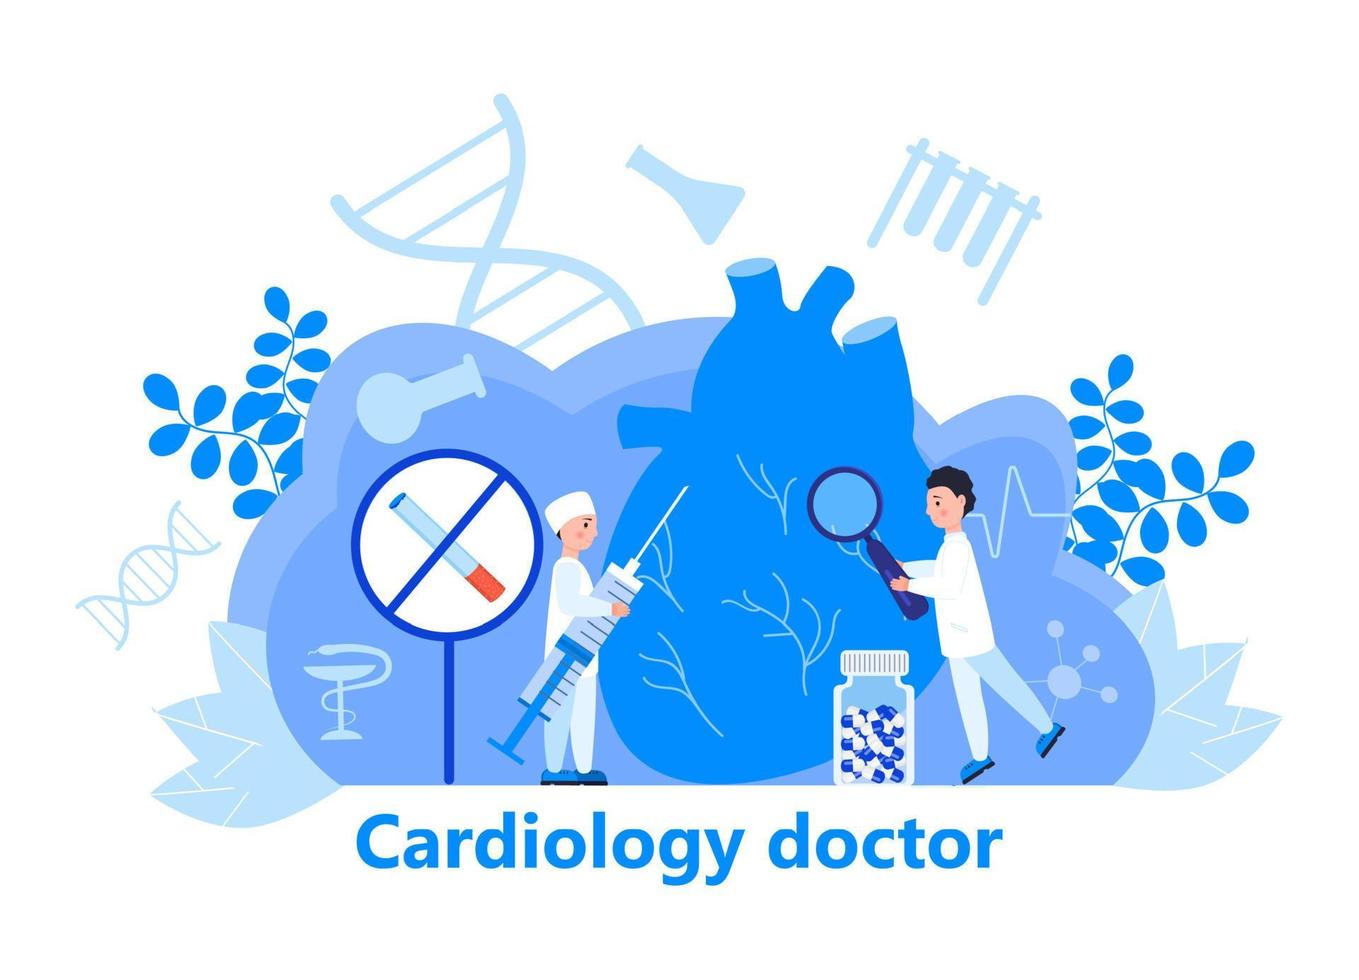 vettore di concetto cardiologo per intestazione web. illustrazione della malattia di ipotensione e ipertensione per app di cardiologia, web. sintomi e prevenzione della pressione sanguigna. i piccoli dottori curano il cuore.